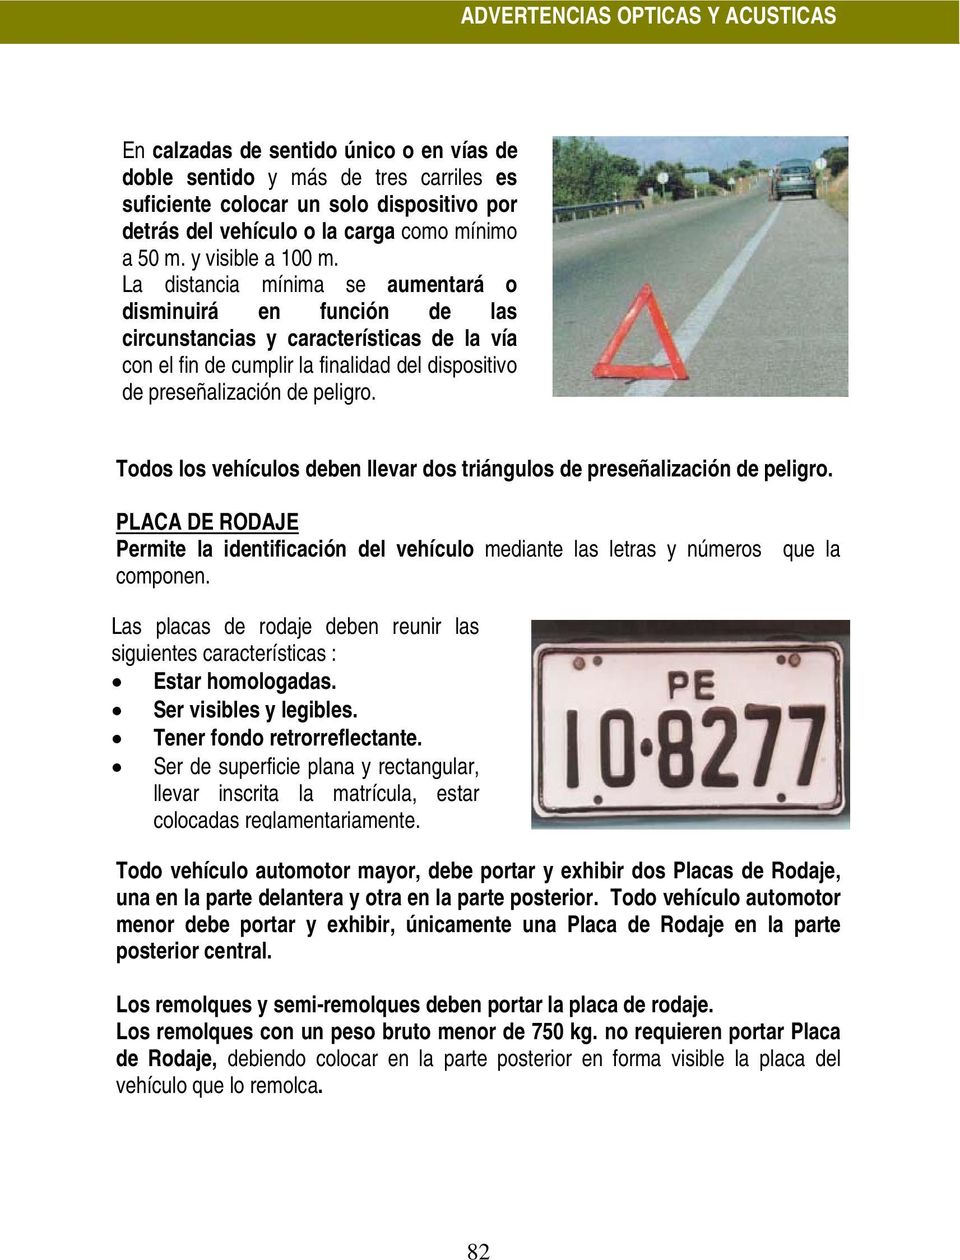 Todos los vehículos deben llevar dos triángulos de preseñalización de peligro. PLACA DE RODAJE Permite la identificación del vehículo mediante las letras y números que la componen.